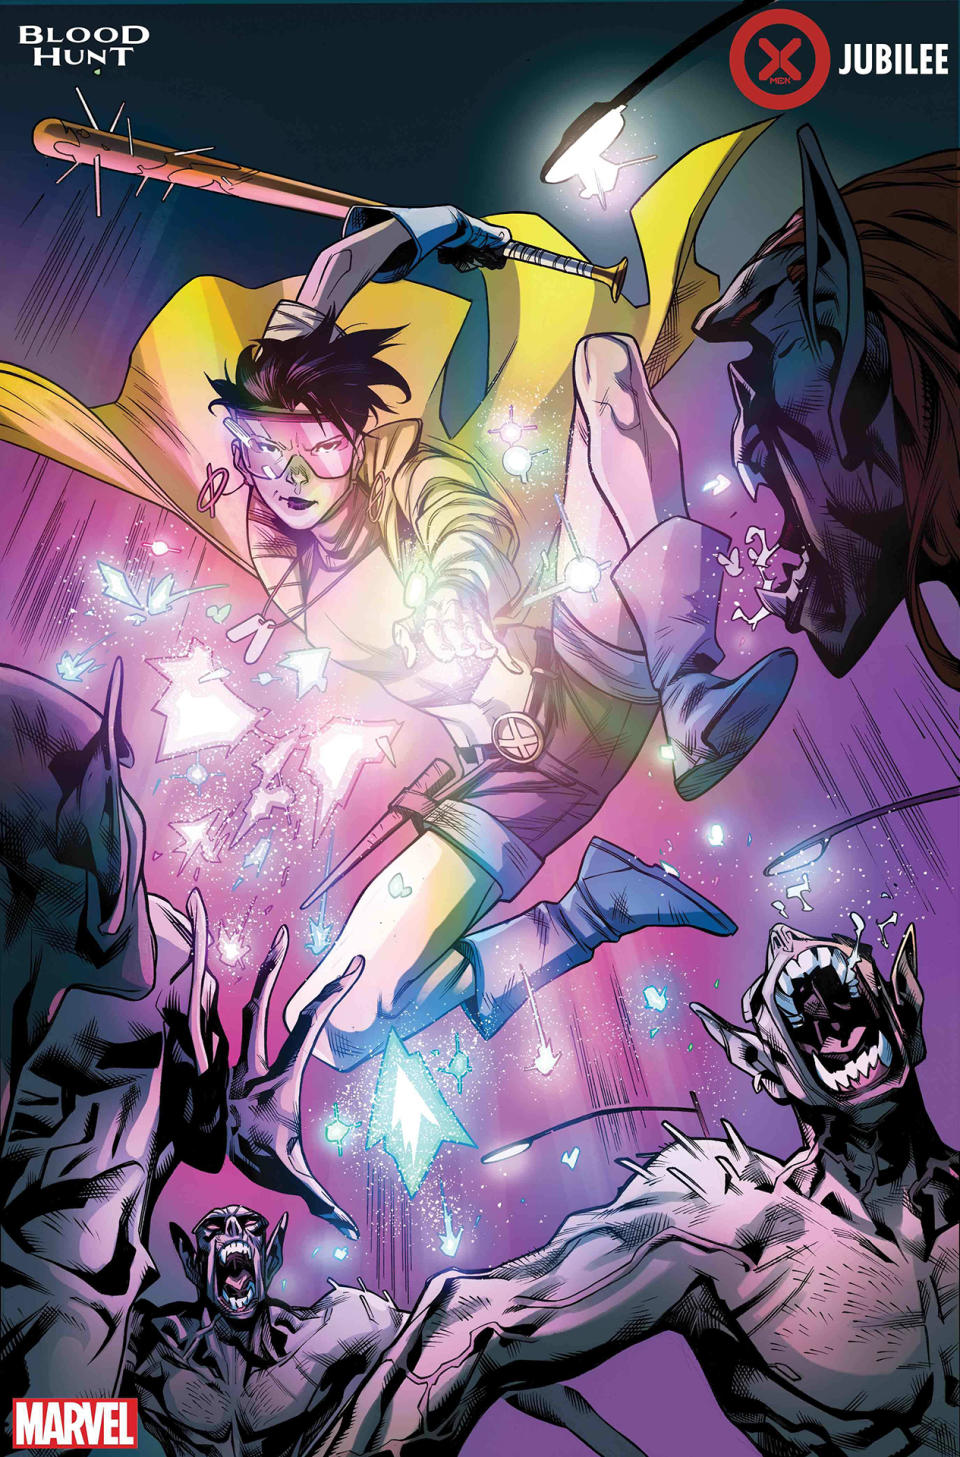 Blood Hunt: X-Men - Jubilee #1